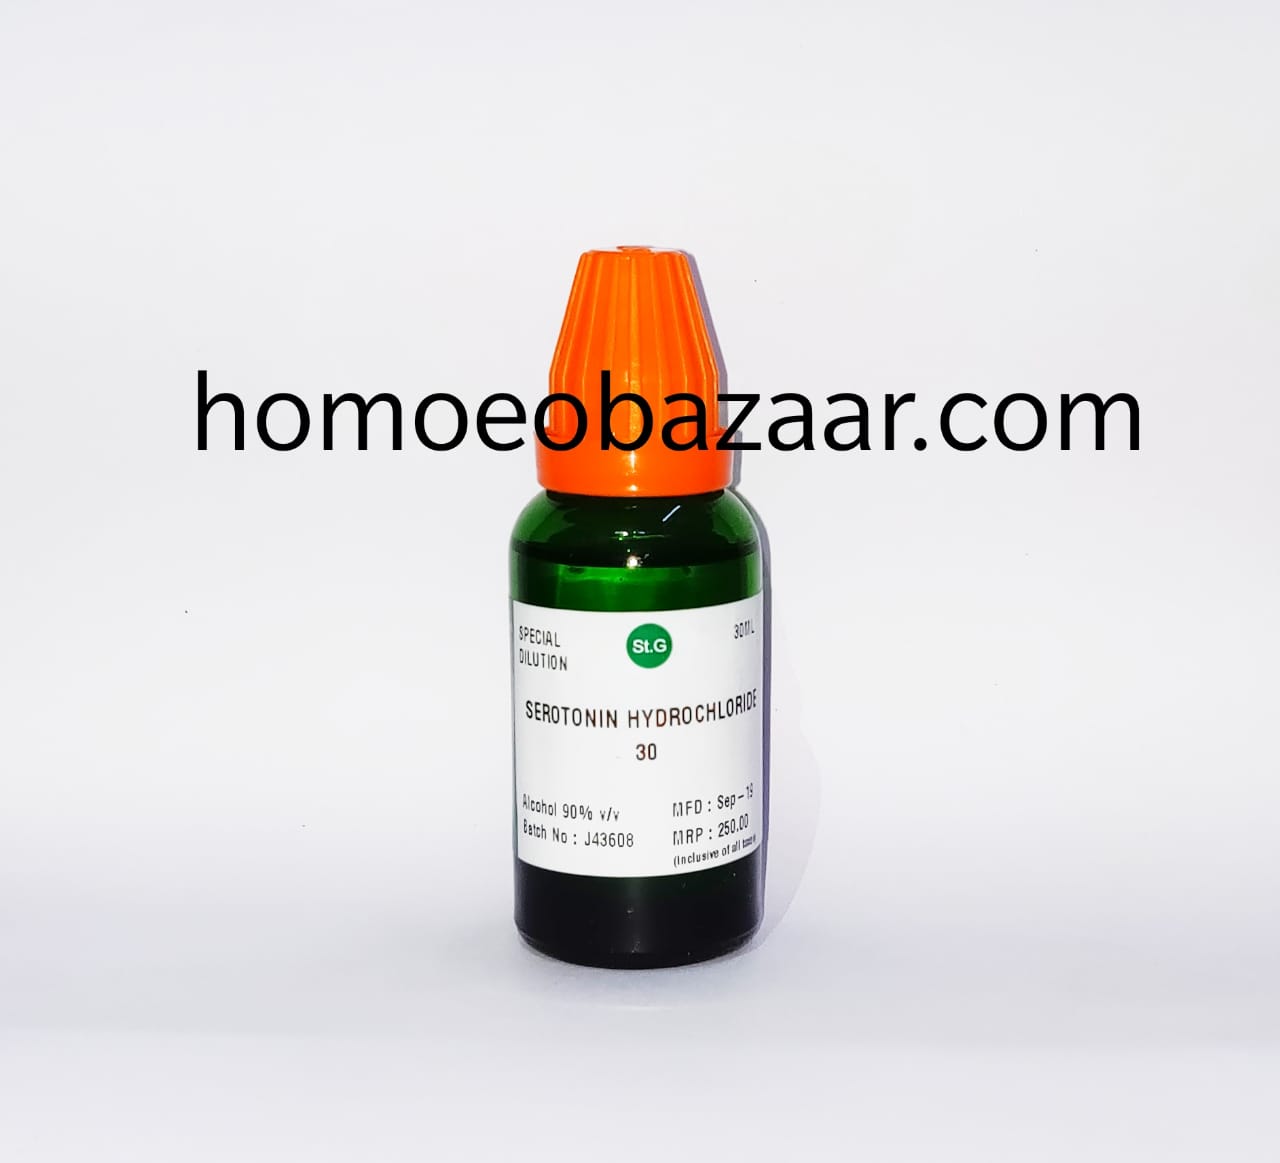 St. George Serotonin Hydrochloride 30 CH (30ml)